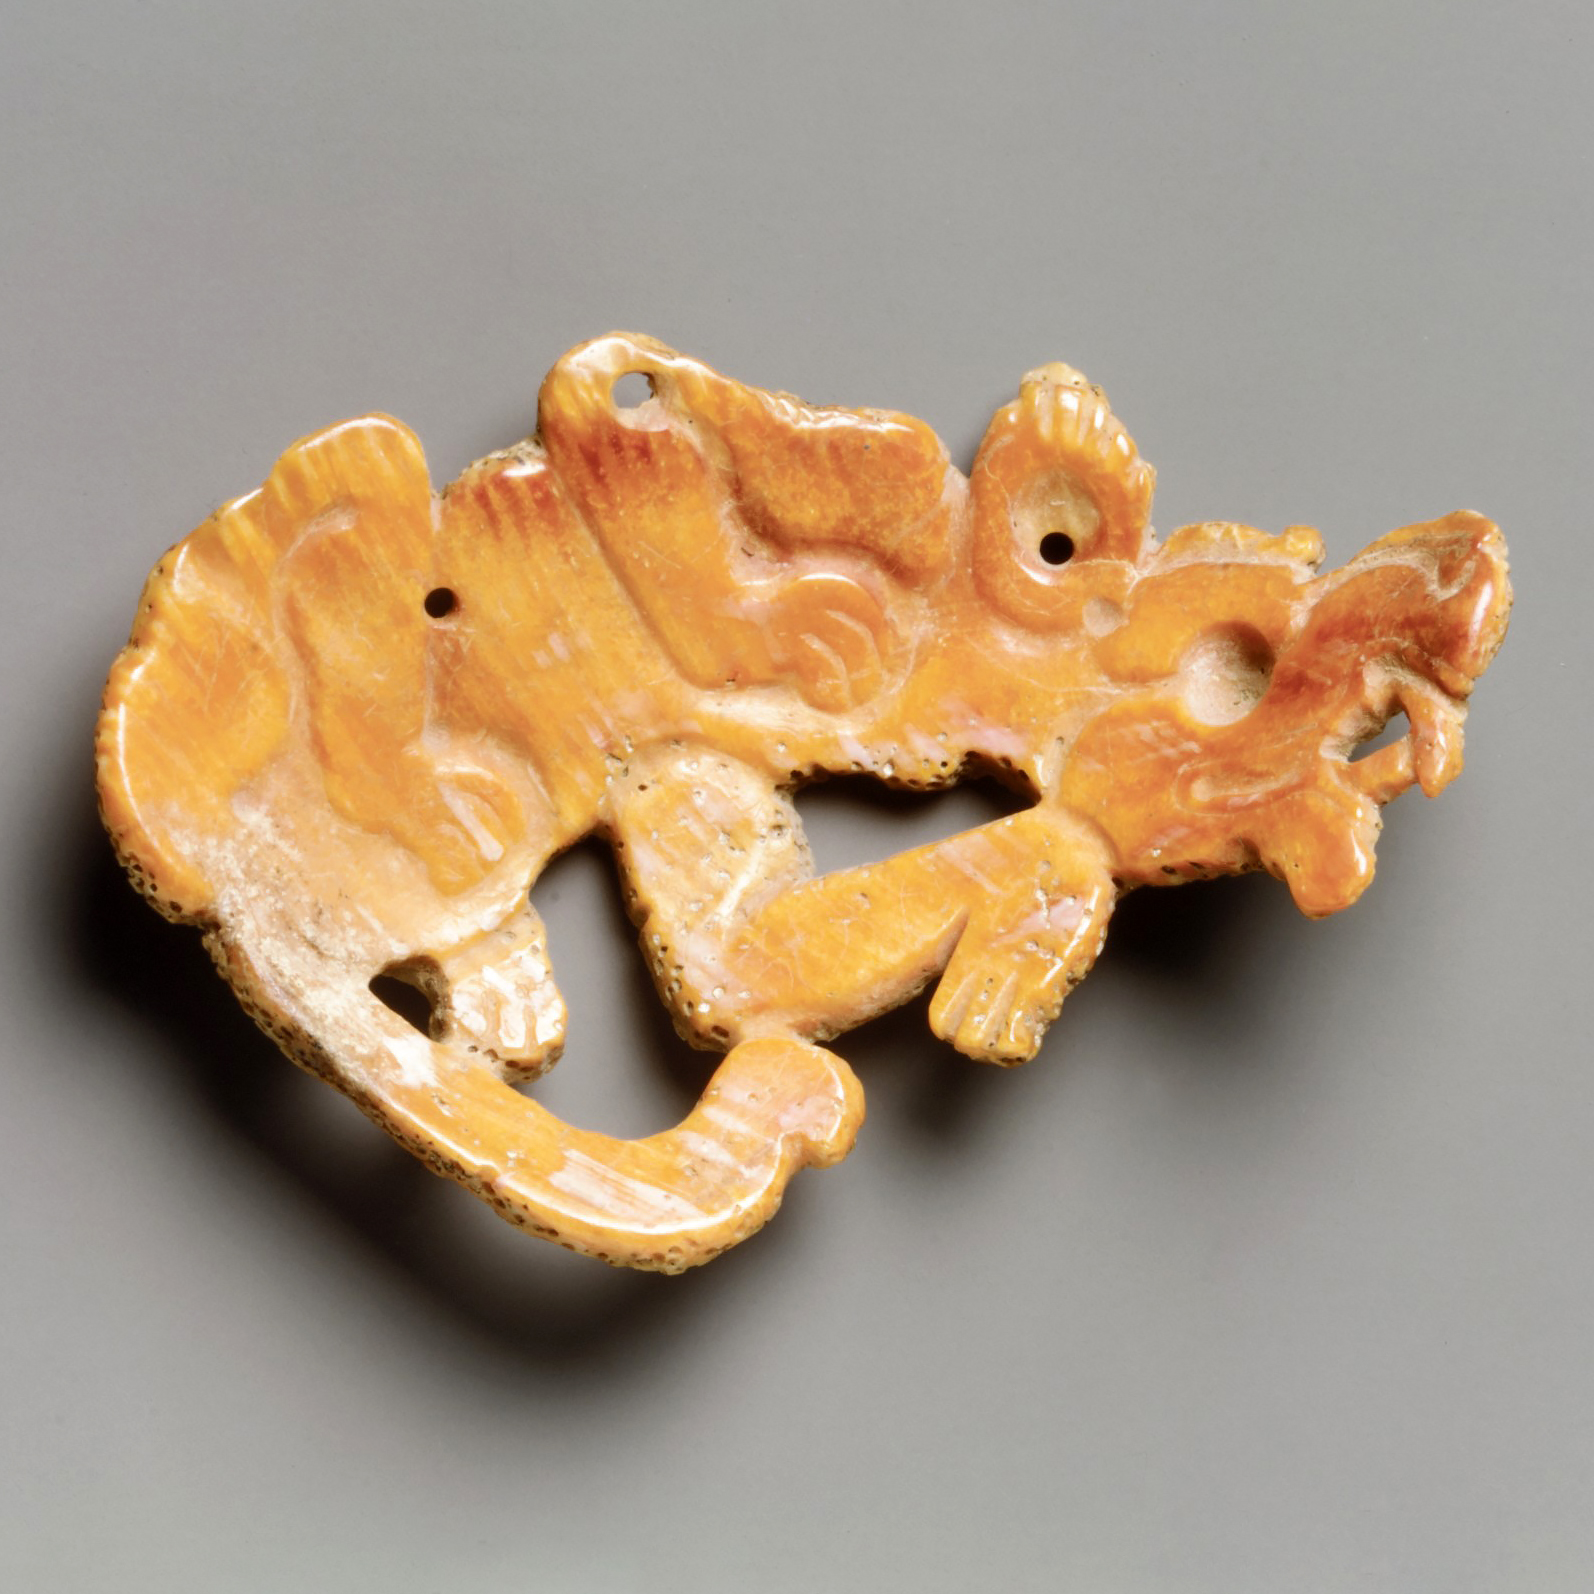 Медальон в виде собаки. Майя, 7-8 вв. н.э. Коллекция The Metropolitan Museum of Art.